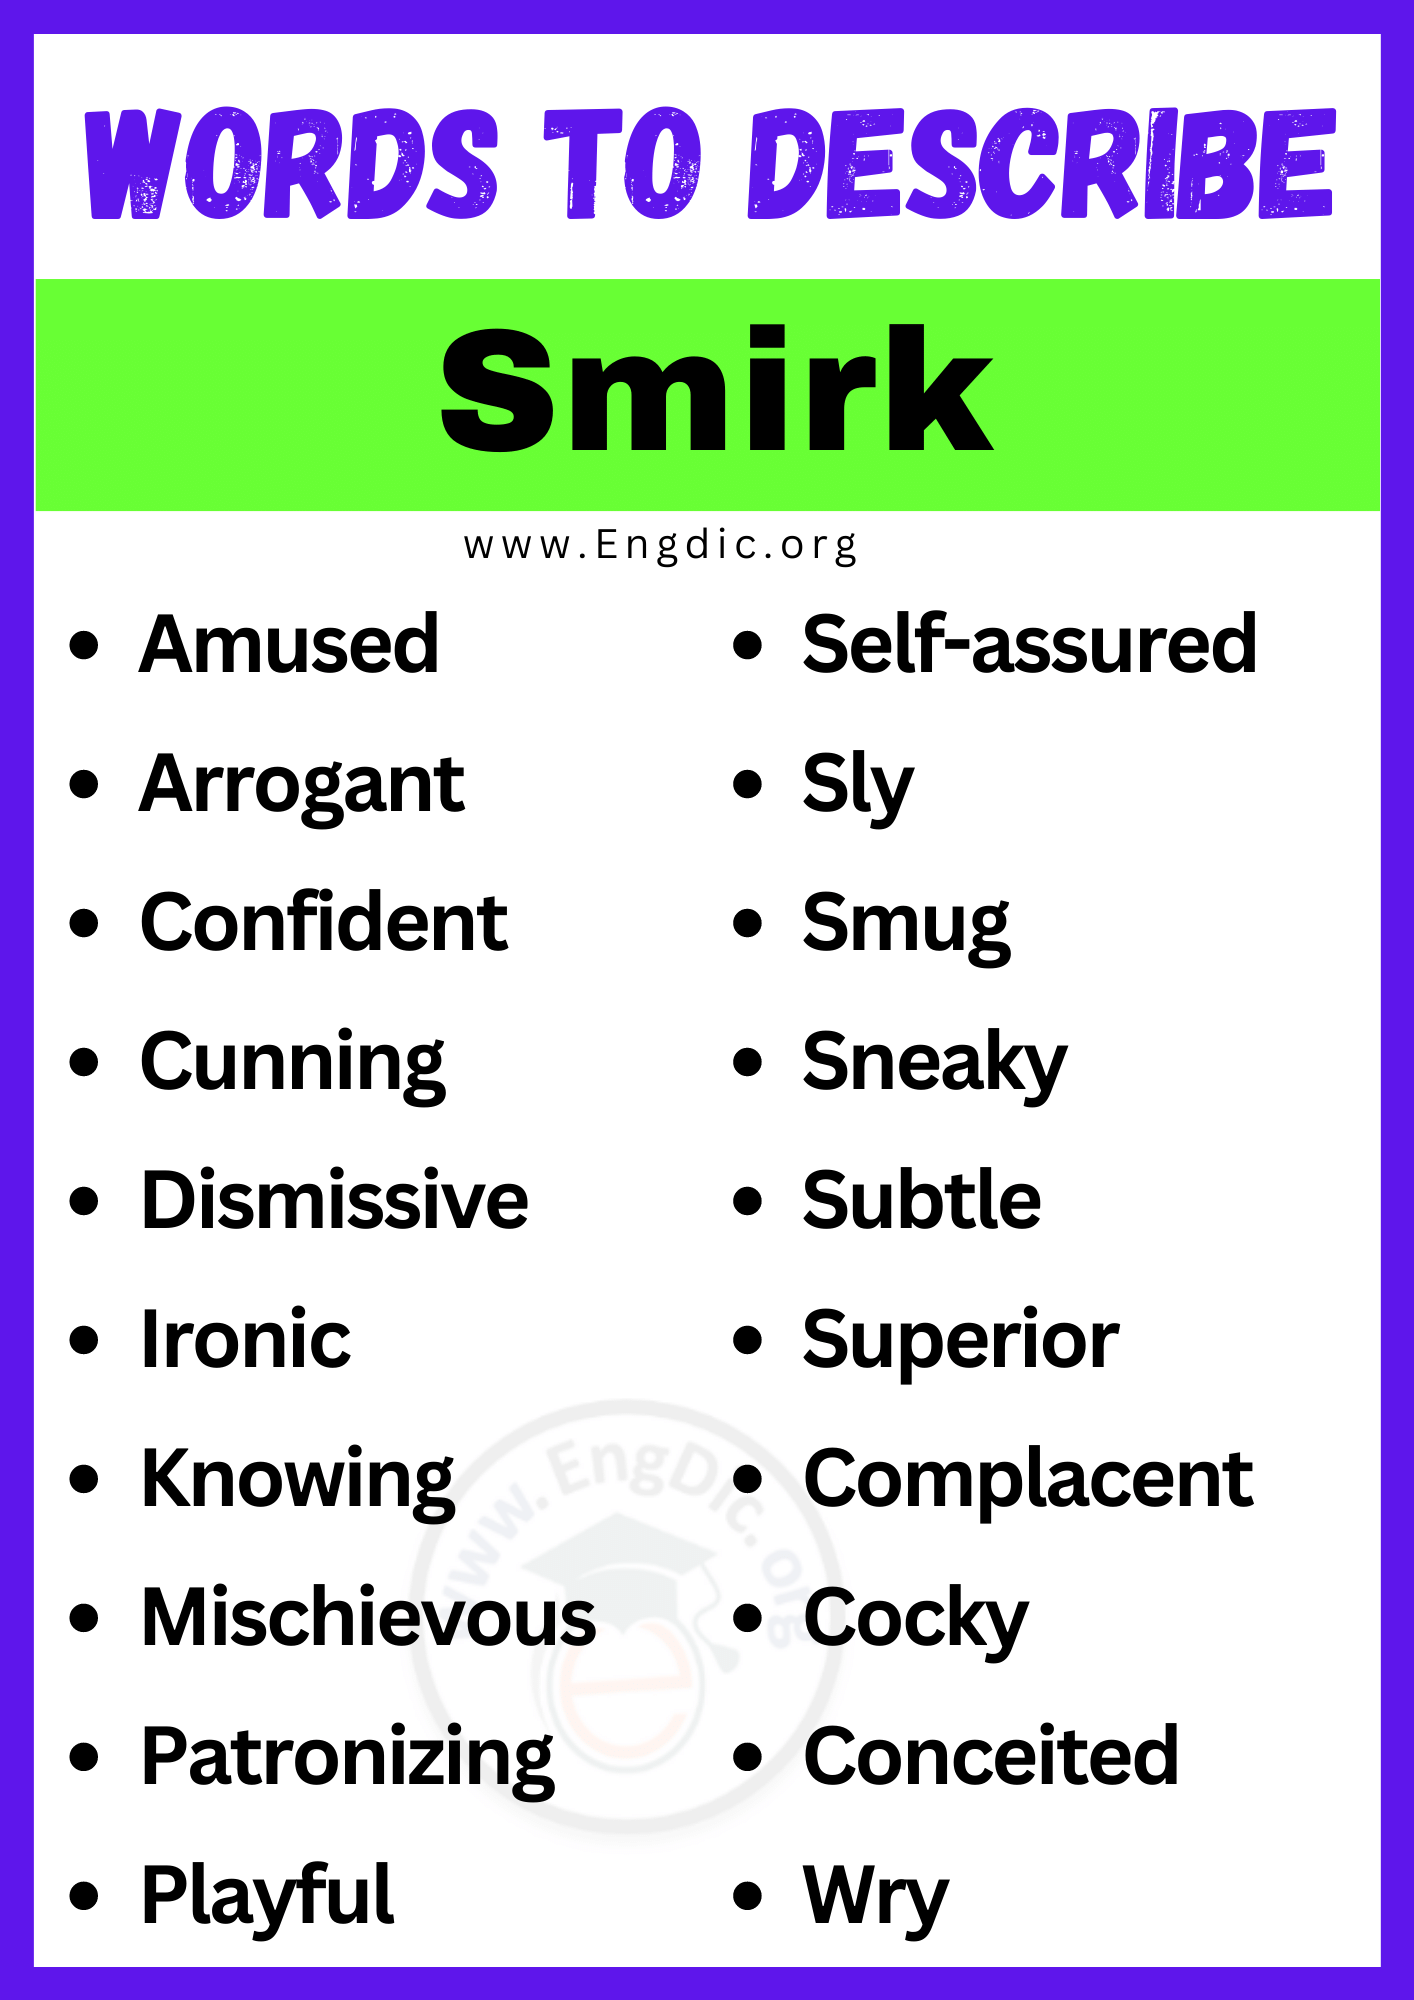 Words to Describe Smirk